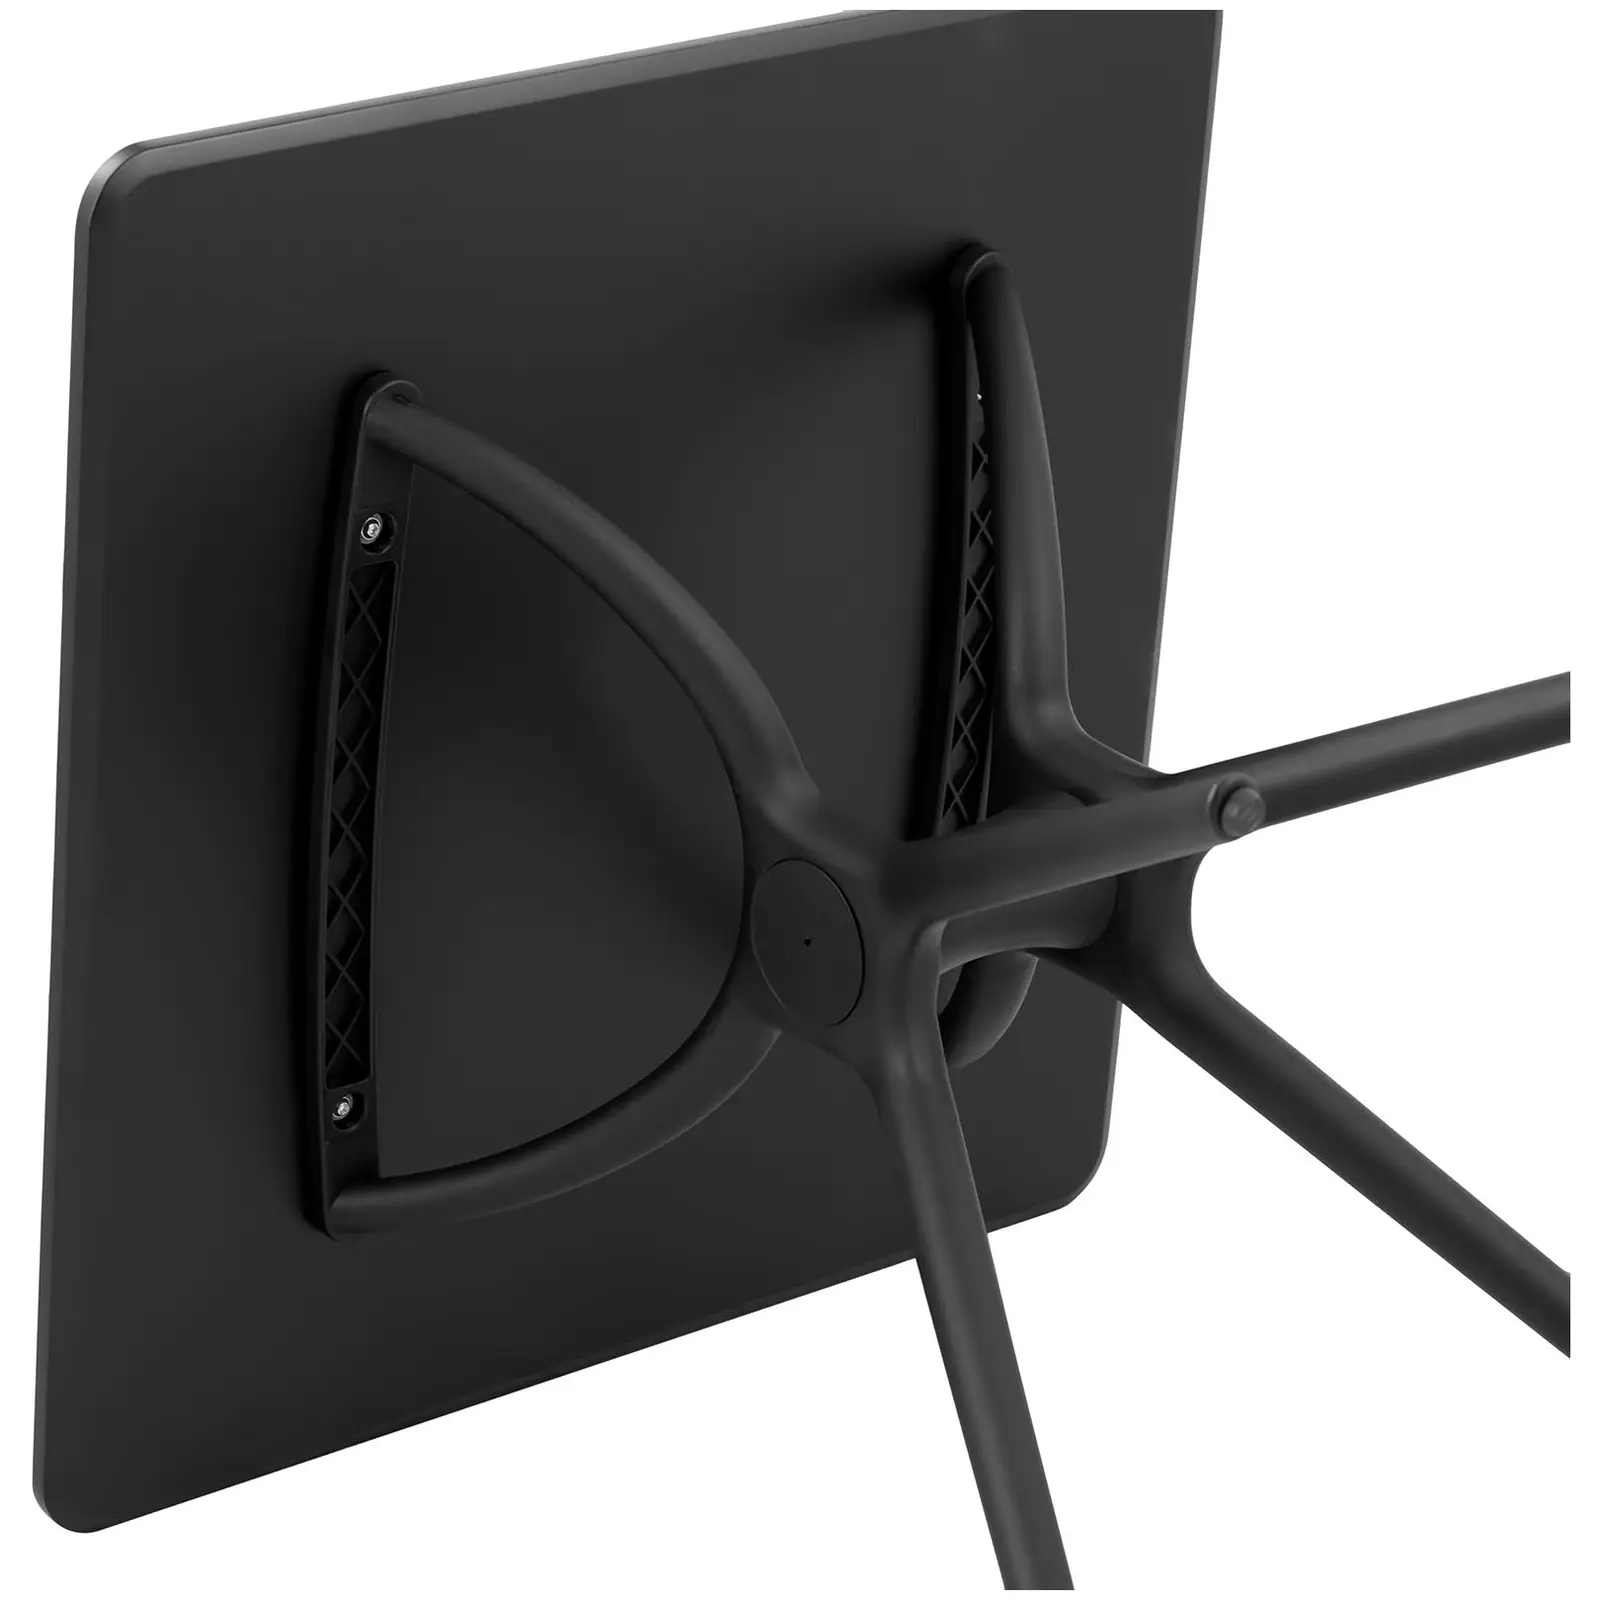 Occasion Table - Plateau carré - 80 x 80 cm - Coloris noir